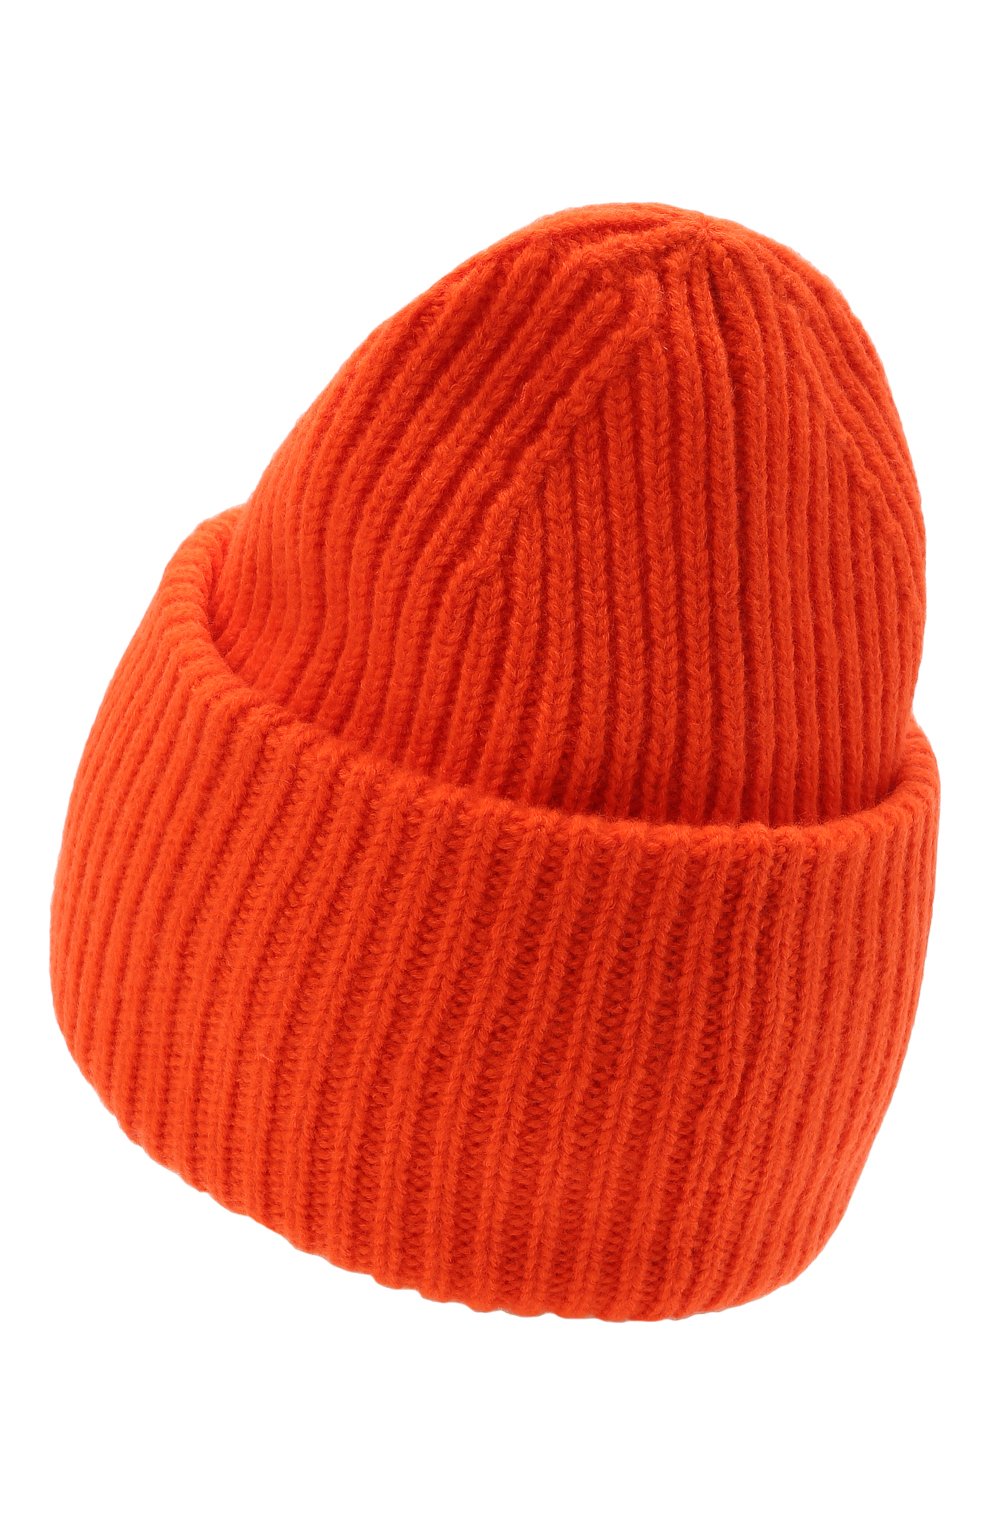 Мужская шерстяная шапка ACNE STUDIOS оранжевого цвета, арт. C40135/M | Фото 2 (Материал: Текстиль, Шерсть; Кросс-КТ: Трикотаж)